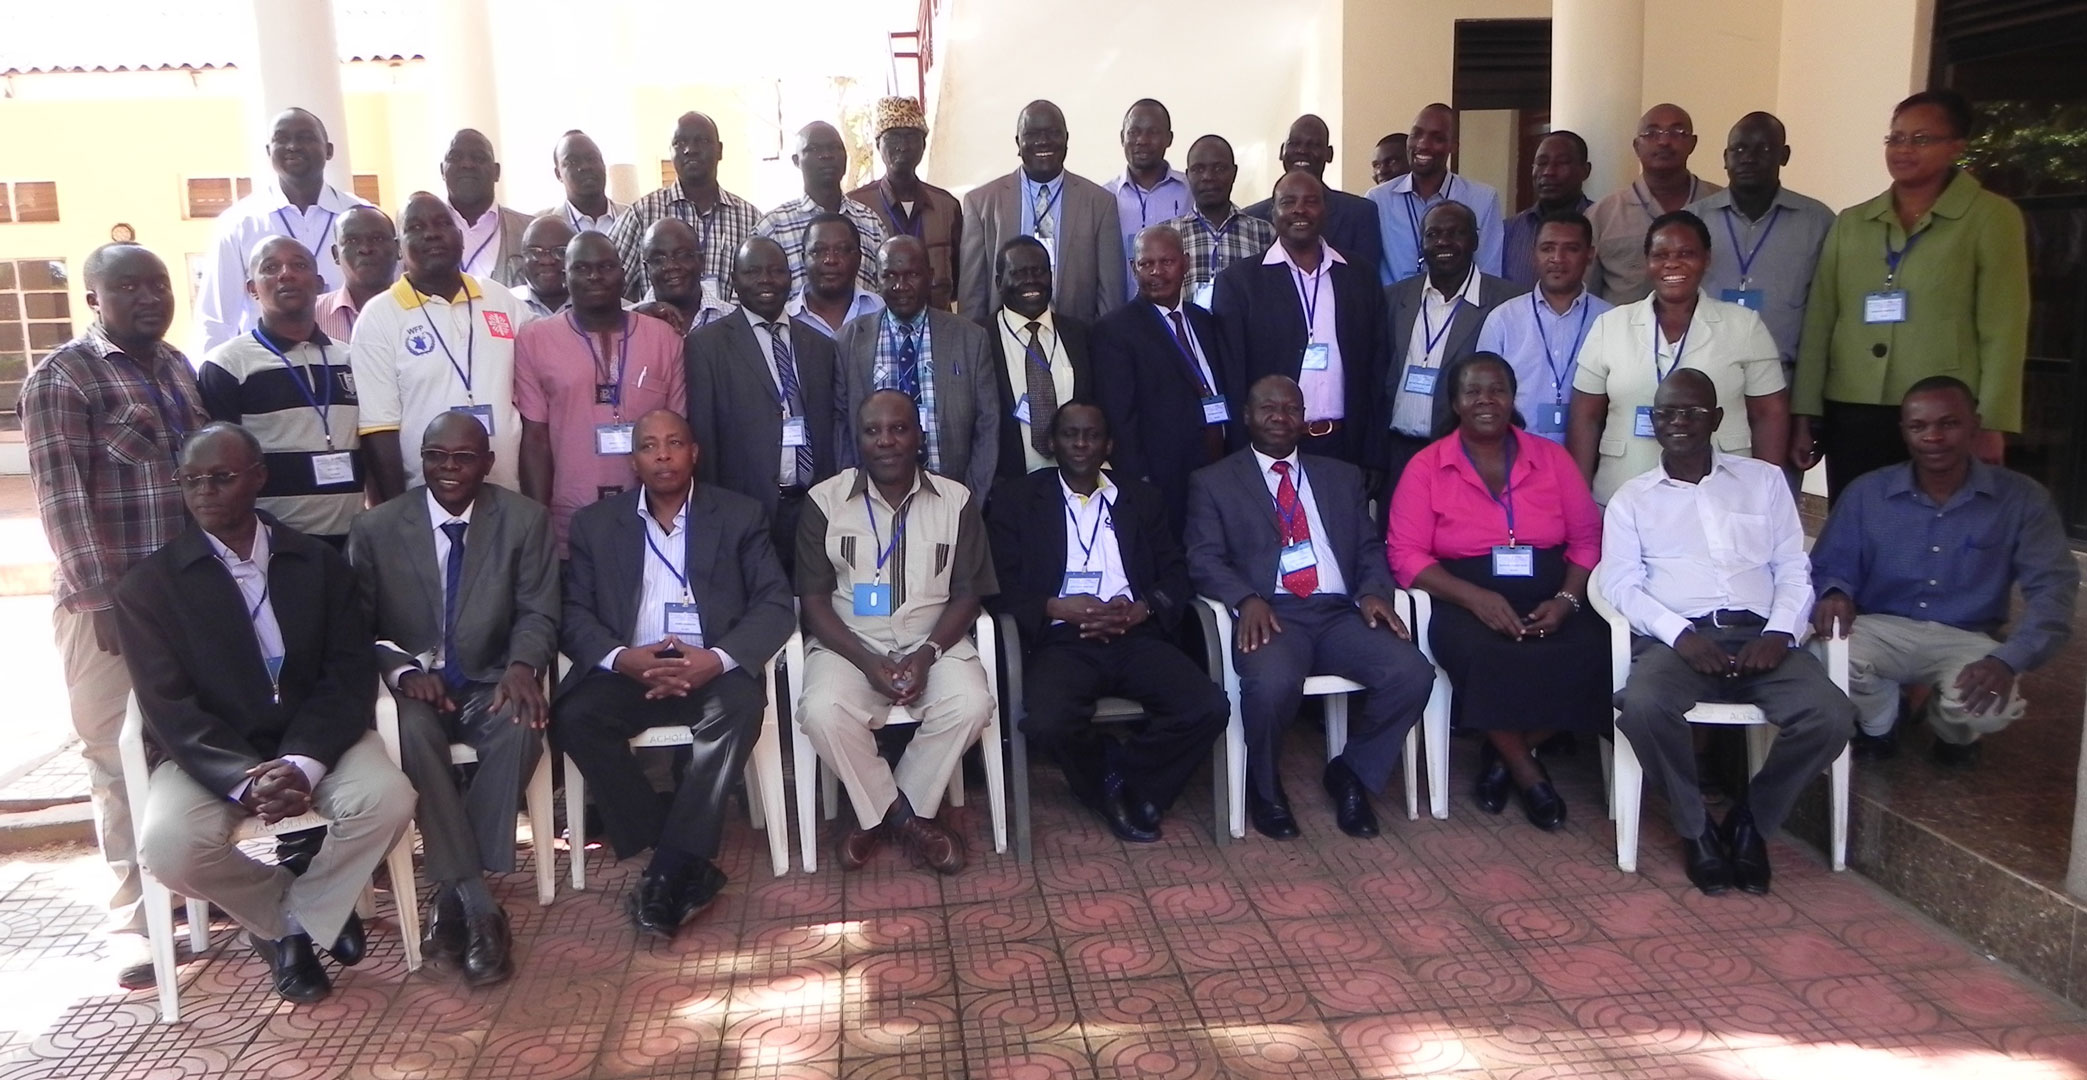  © 2014 AU-IBAR. Participants at the SMP-AH Cross-border Meeting for Ethiopia, South Sudan, Kenya and Uganda held in Gulu, Uganda, 11th-13th November 2014.